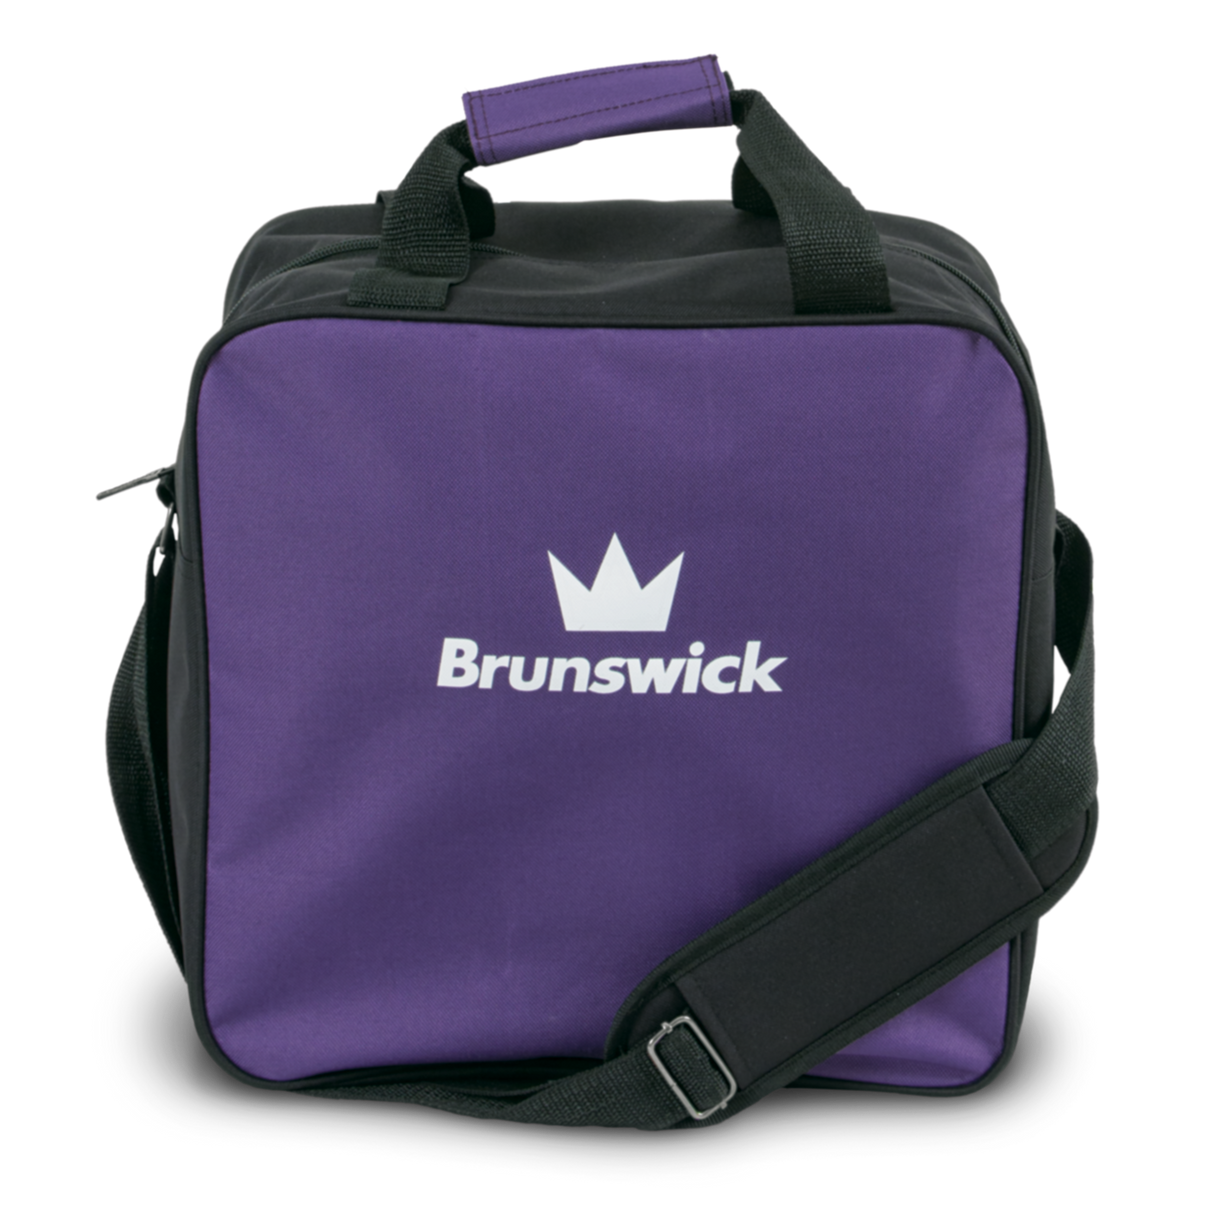 Brunswick Target Zone Single Purple Bowling Bag Bowling Bag travel suitcase league tournament play sale discount coupon online pba tour